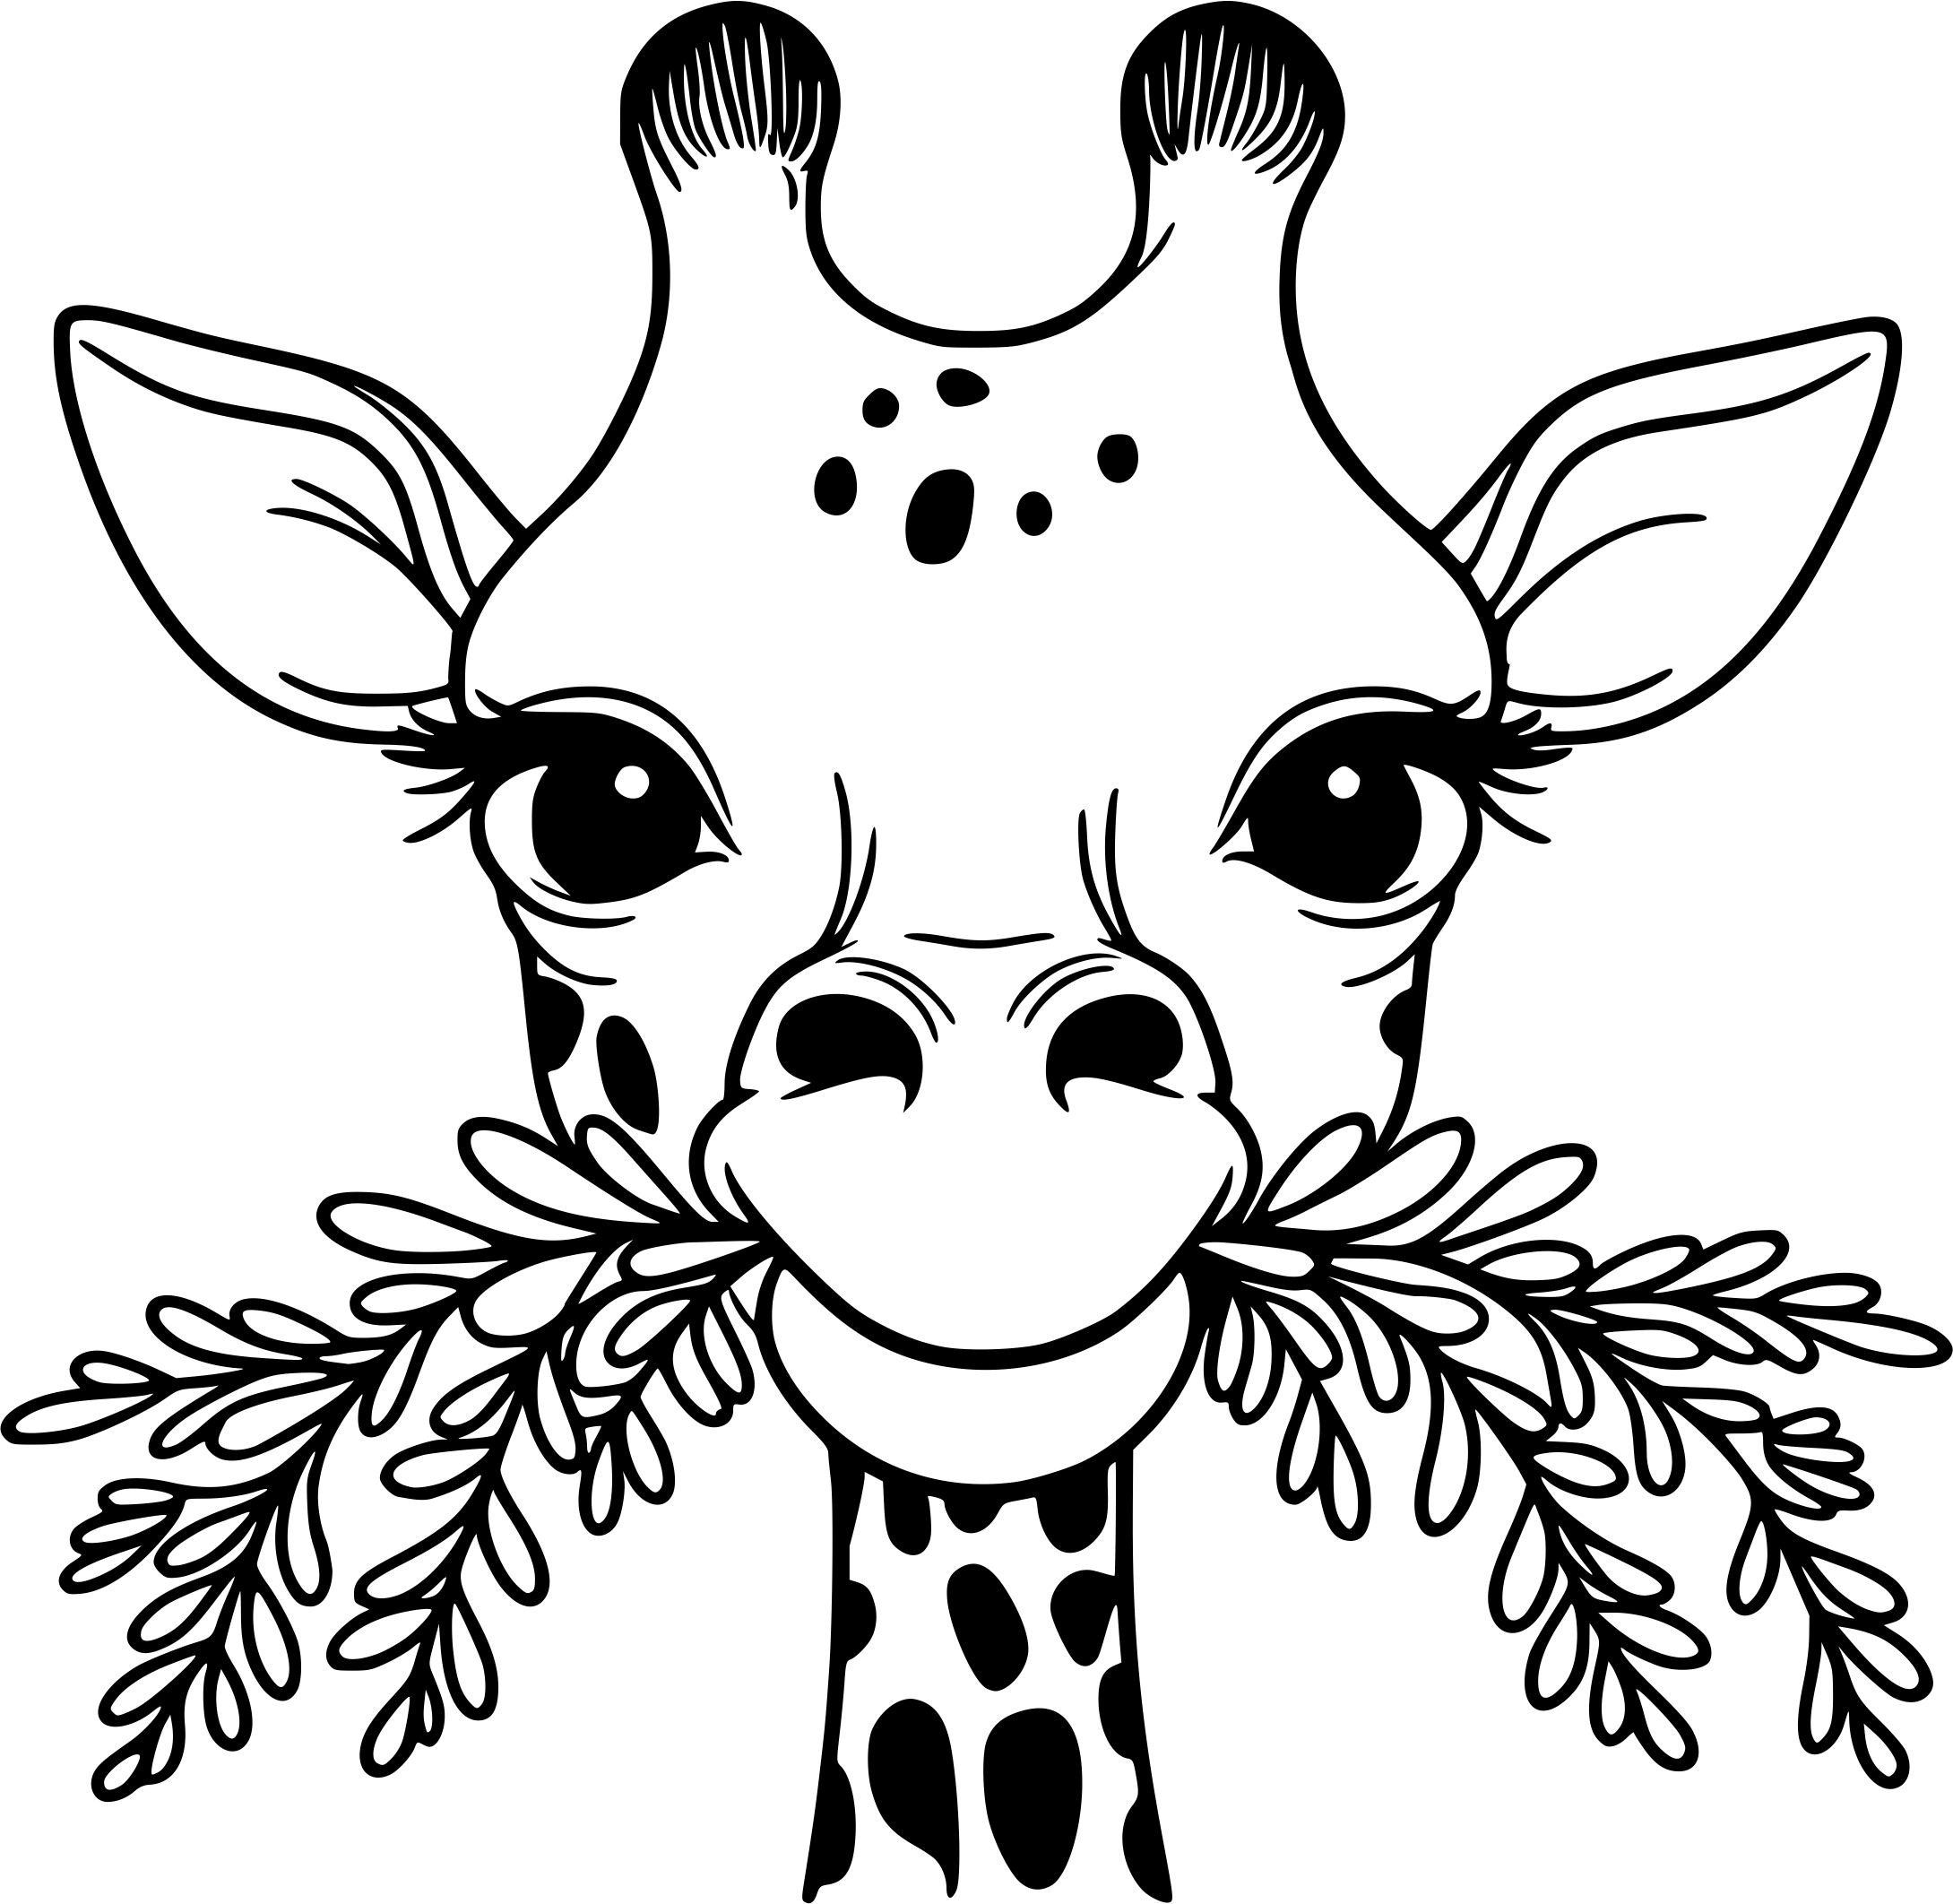 Wandtattoodesign Wandtattoo Aufkleber Wandaufkleber Giraffe 60x60cm Farbe Schwarz (1 St), Selbstklebend, Rückstandslos entfernbar